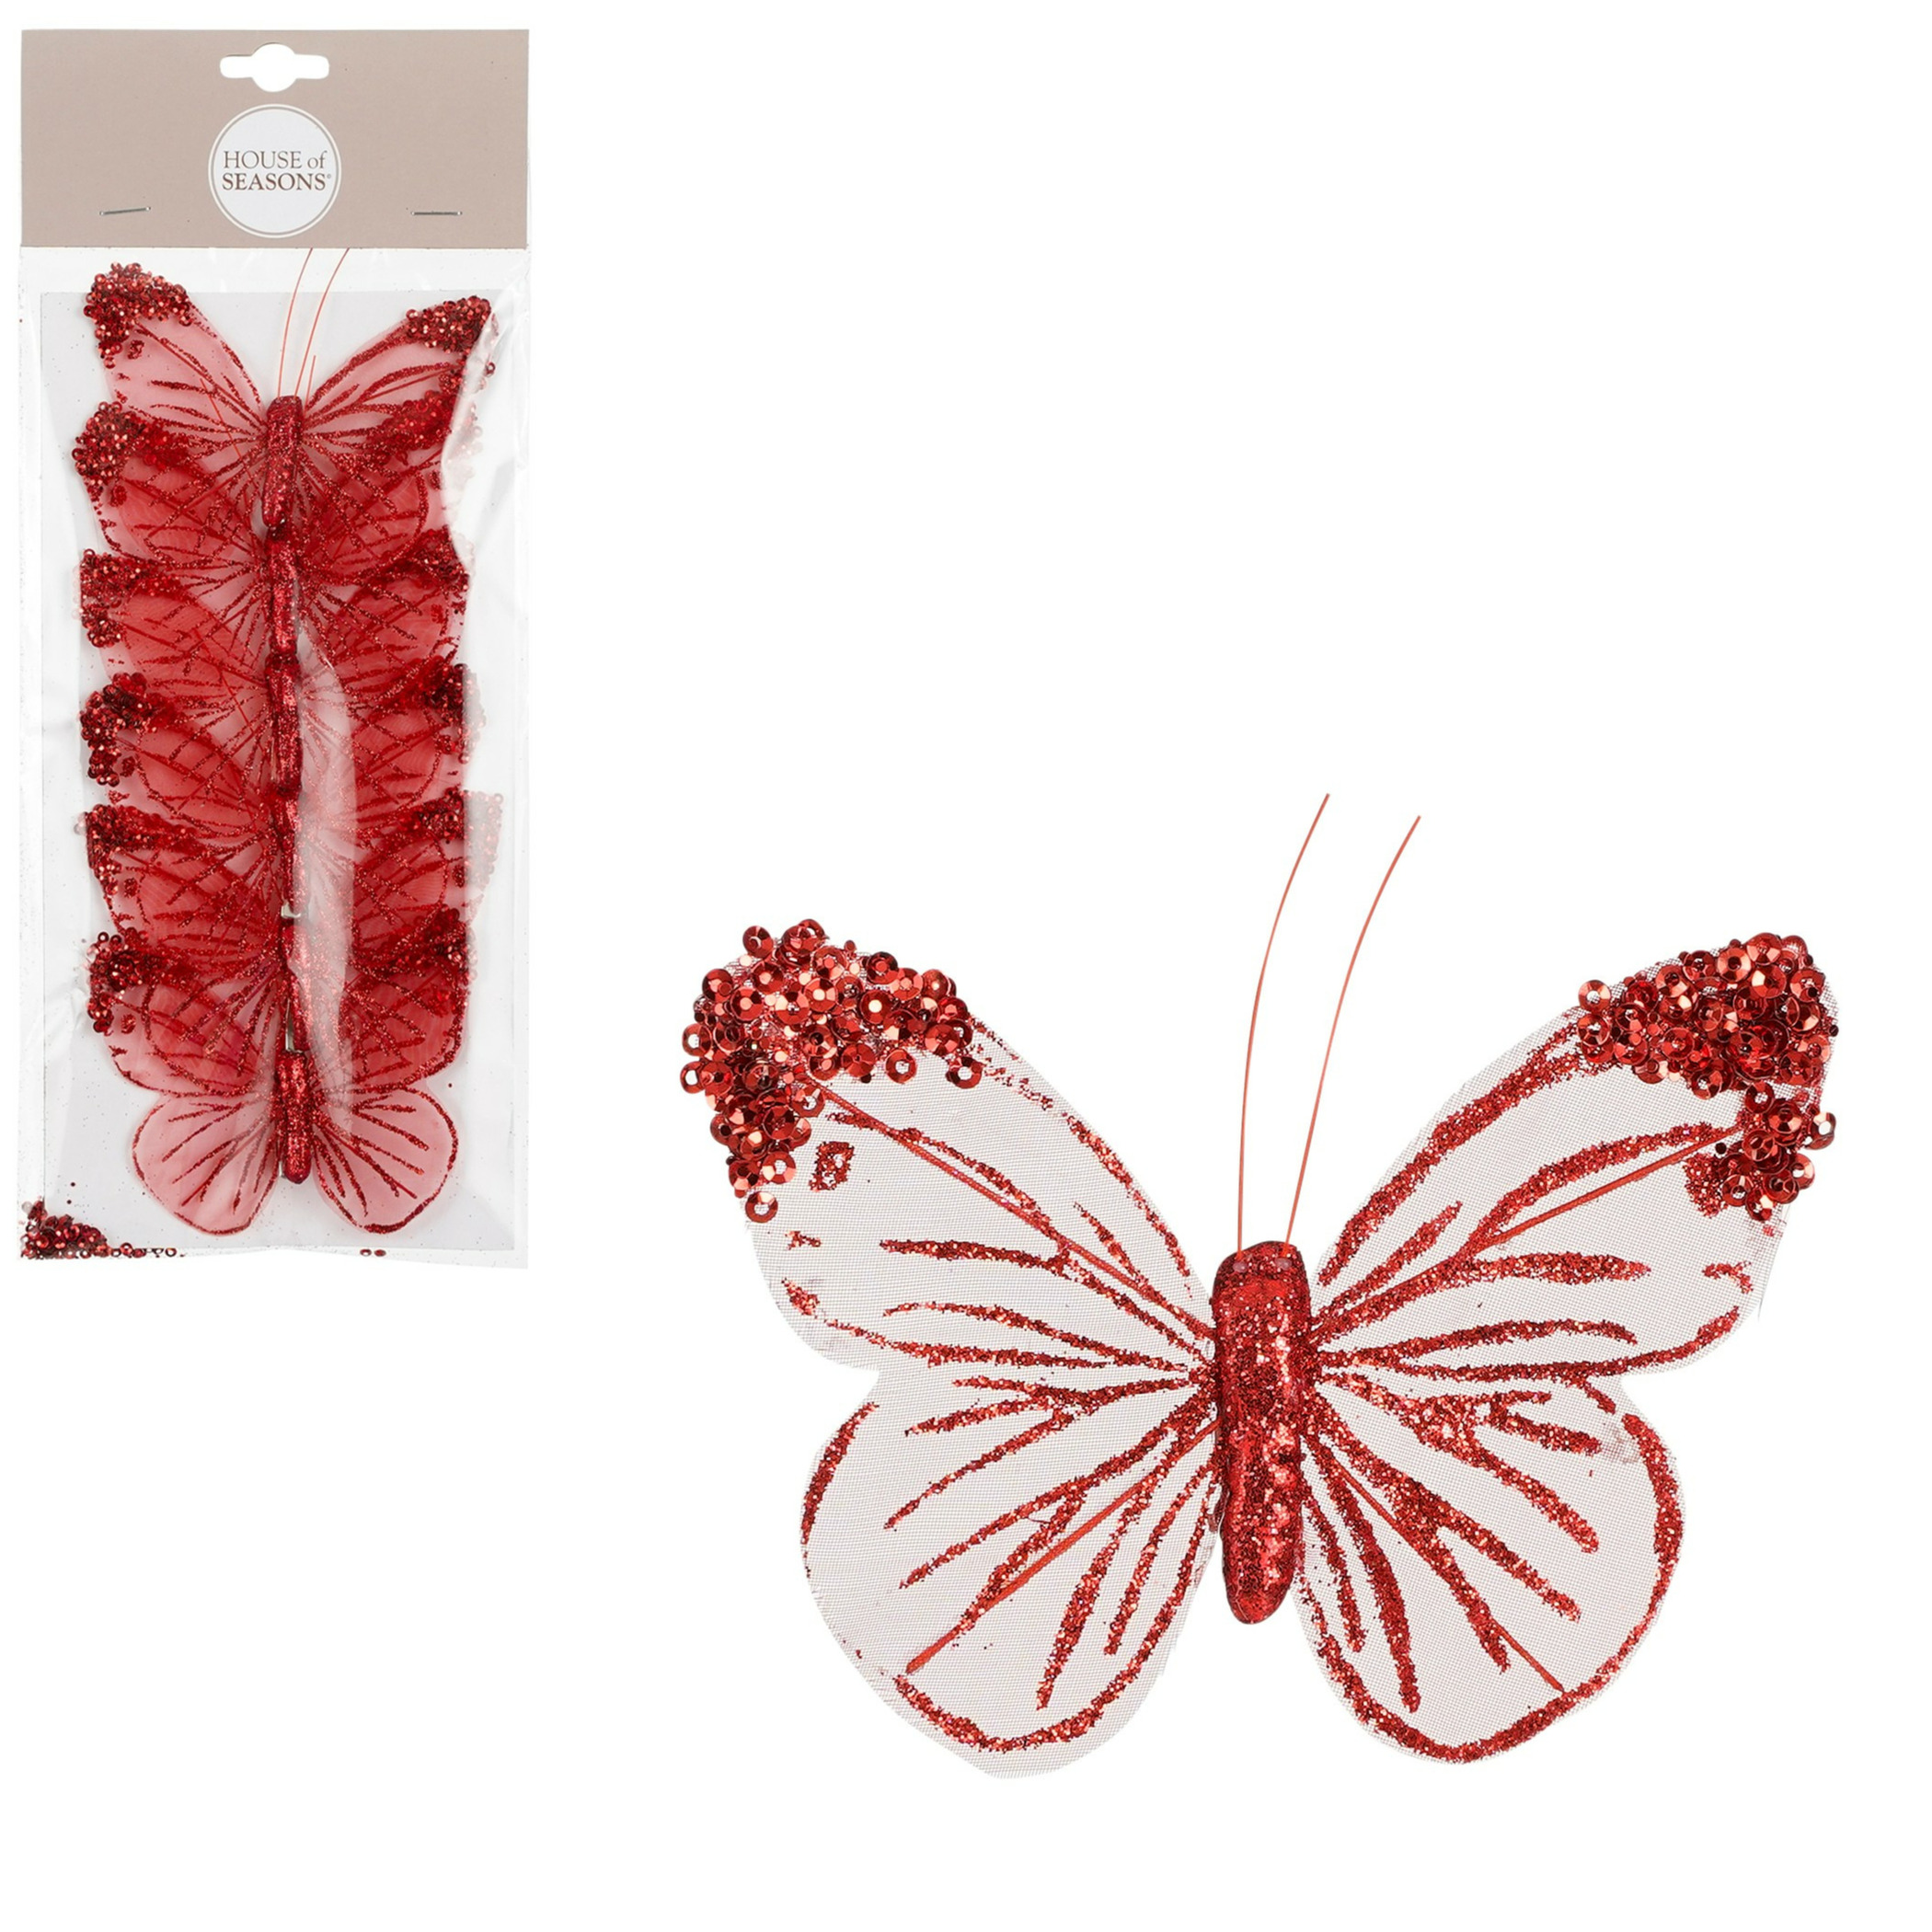 House of Seasons vlinders op clip - 6x stuks - rood/wit - 10 cm